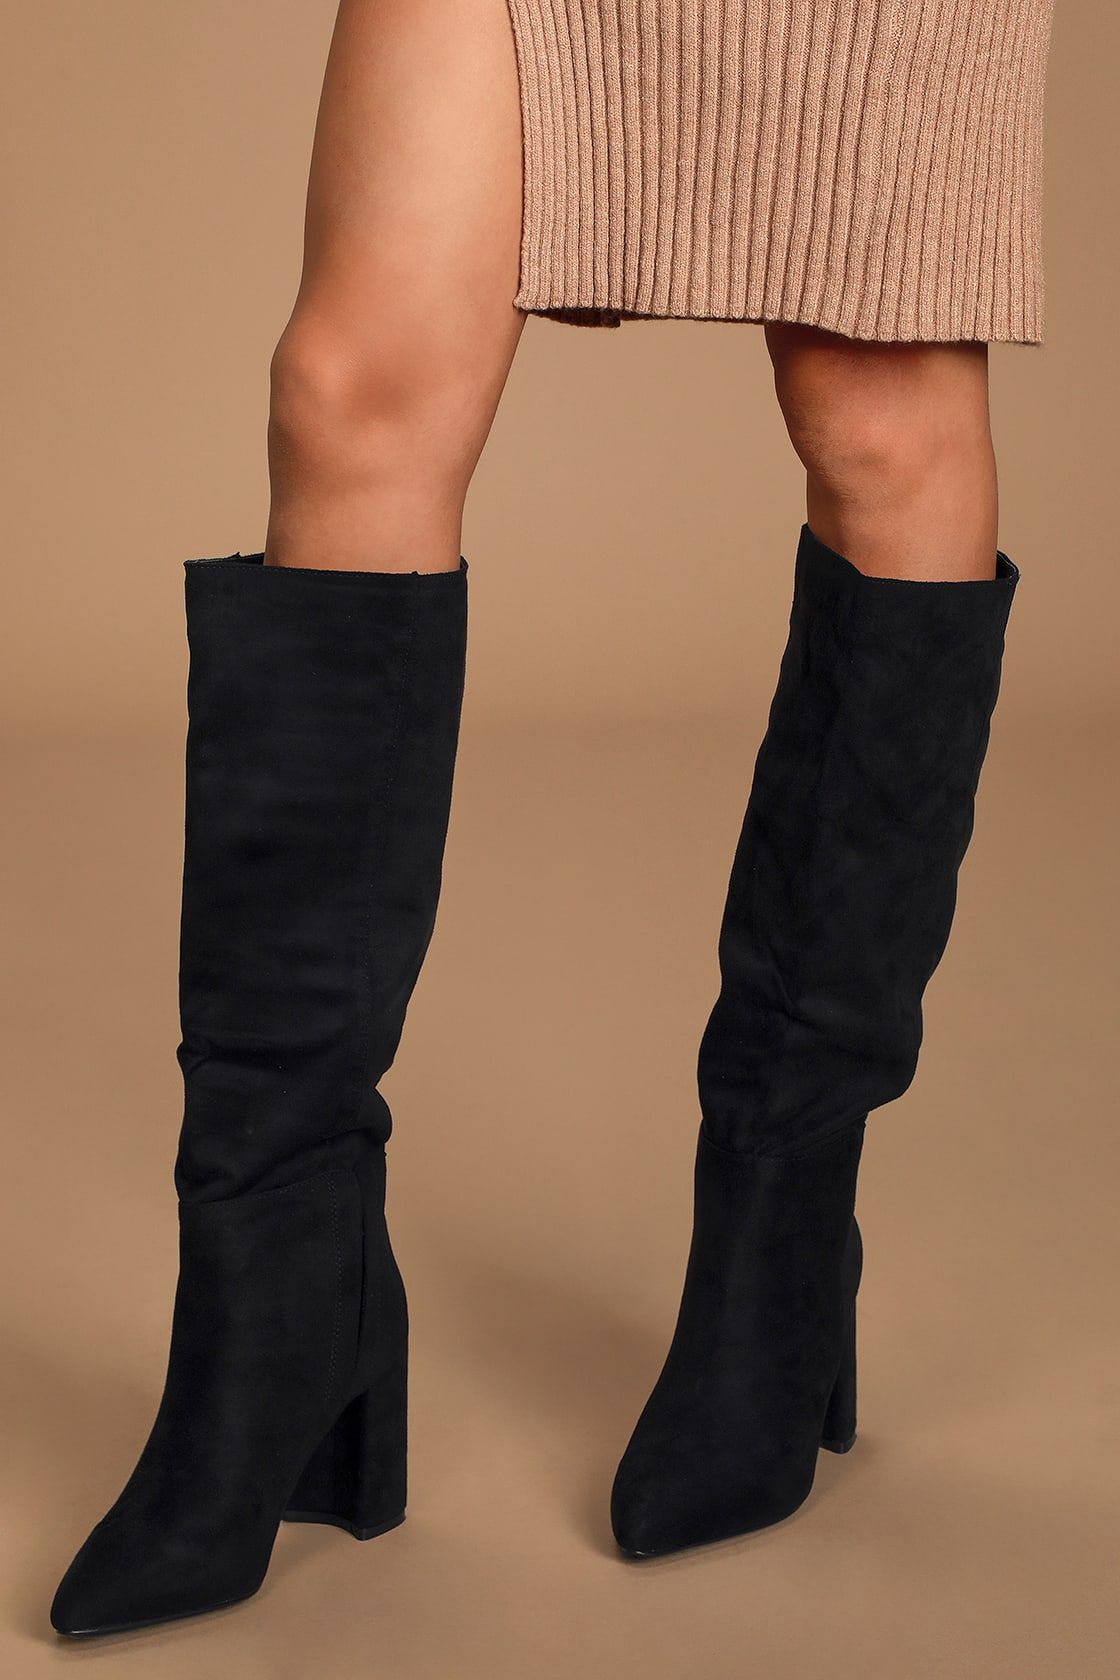 Katari Black Suede Pointed-Toe Knee High Boots | Lulus (US)